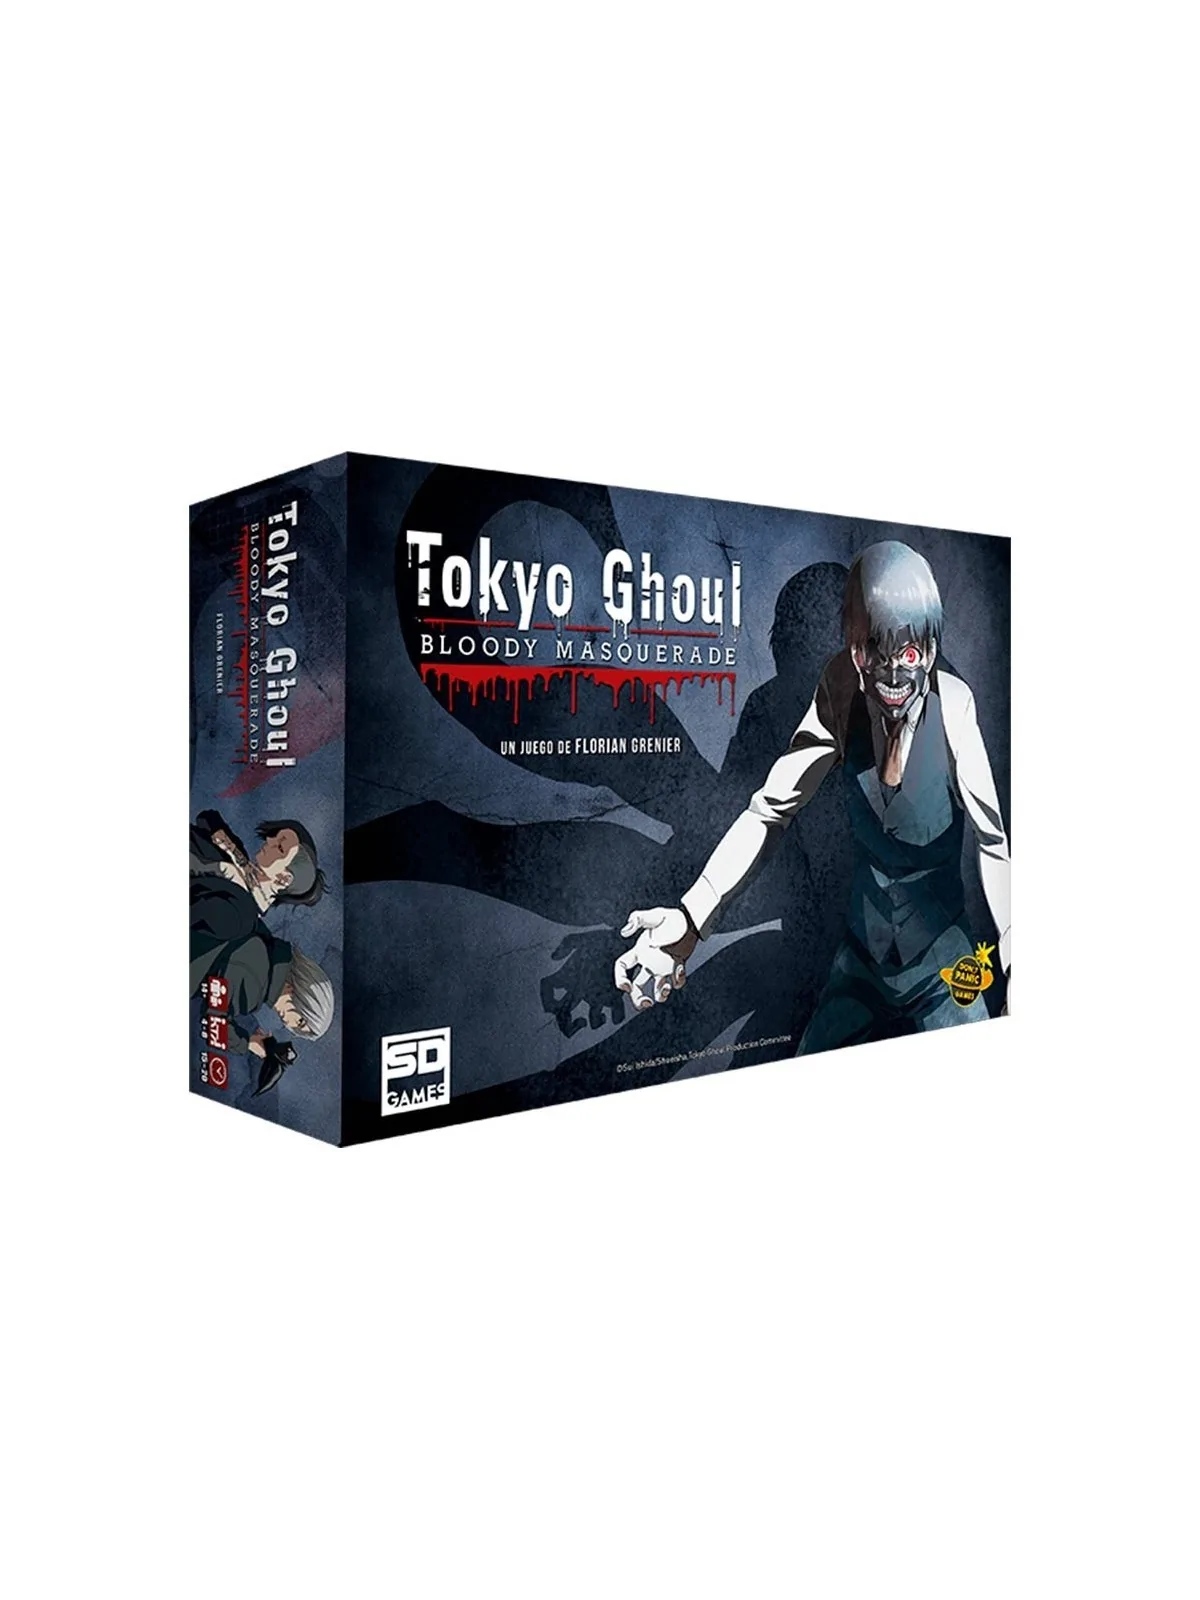 Comprar Tokyo Ghoul: Bloody Masquerade barato al mejor precio 31,45 € 